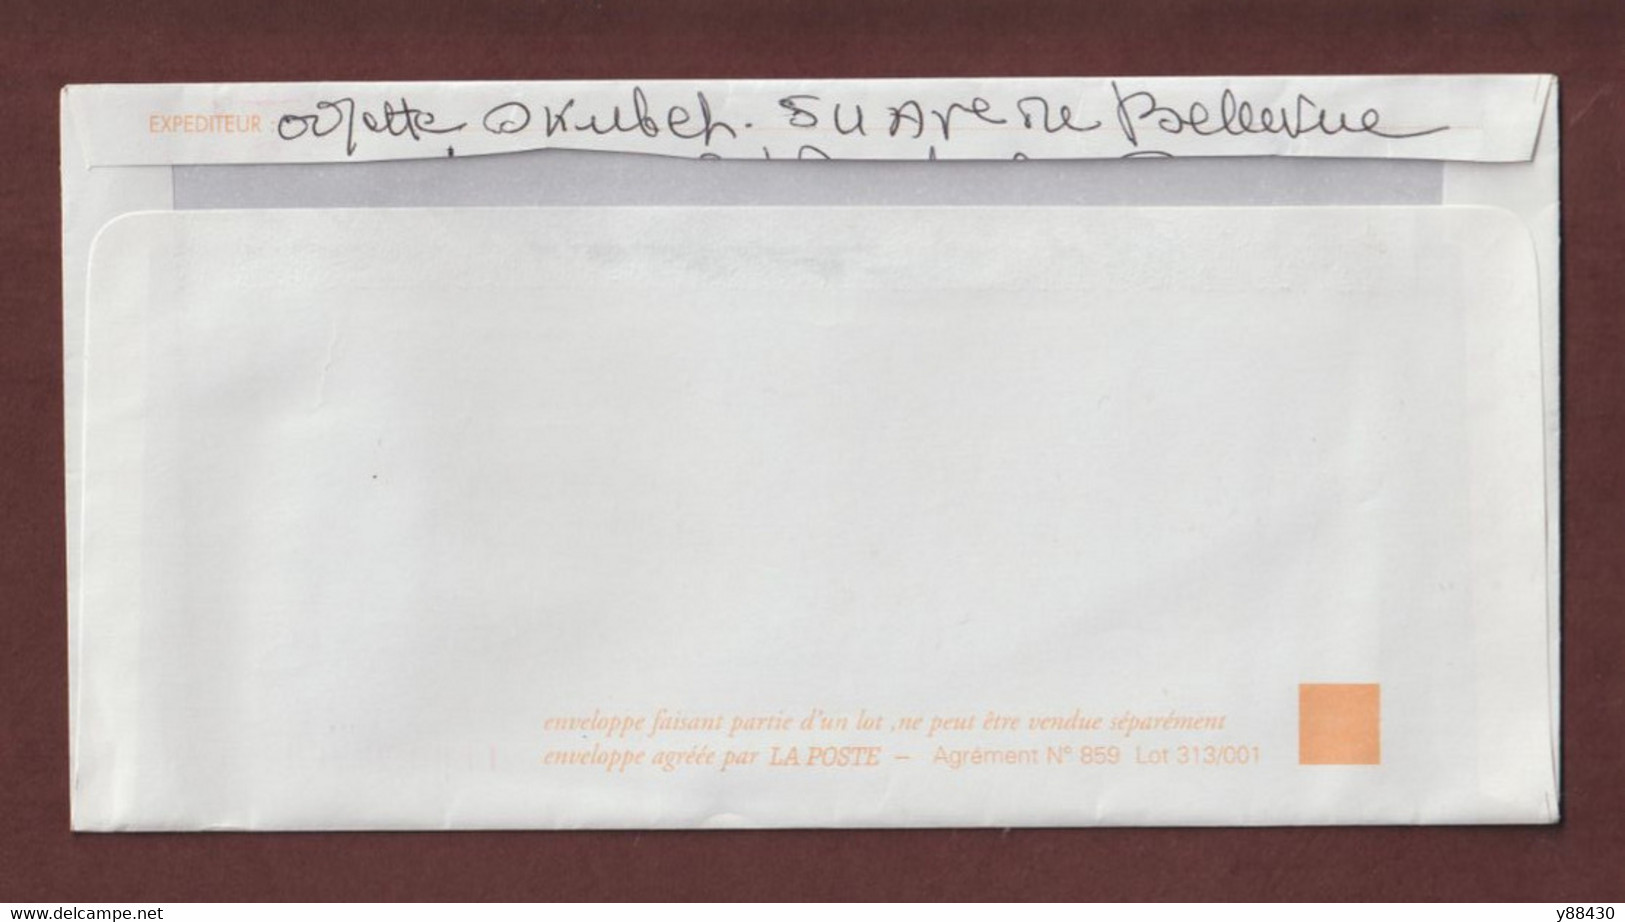 2958 De 1995 - PAP - Oblitéré - N° Dos : 859 Lot 313/001 - Repiquage  Jean DE LA FONTAINE - Scannes Face & Dos - Enveloppes Repiquages (avant 1995)